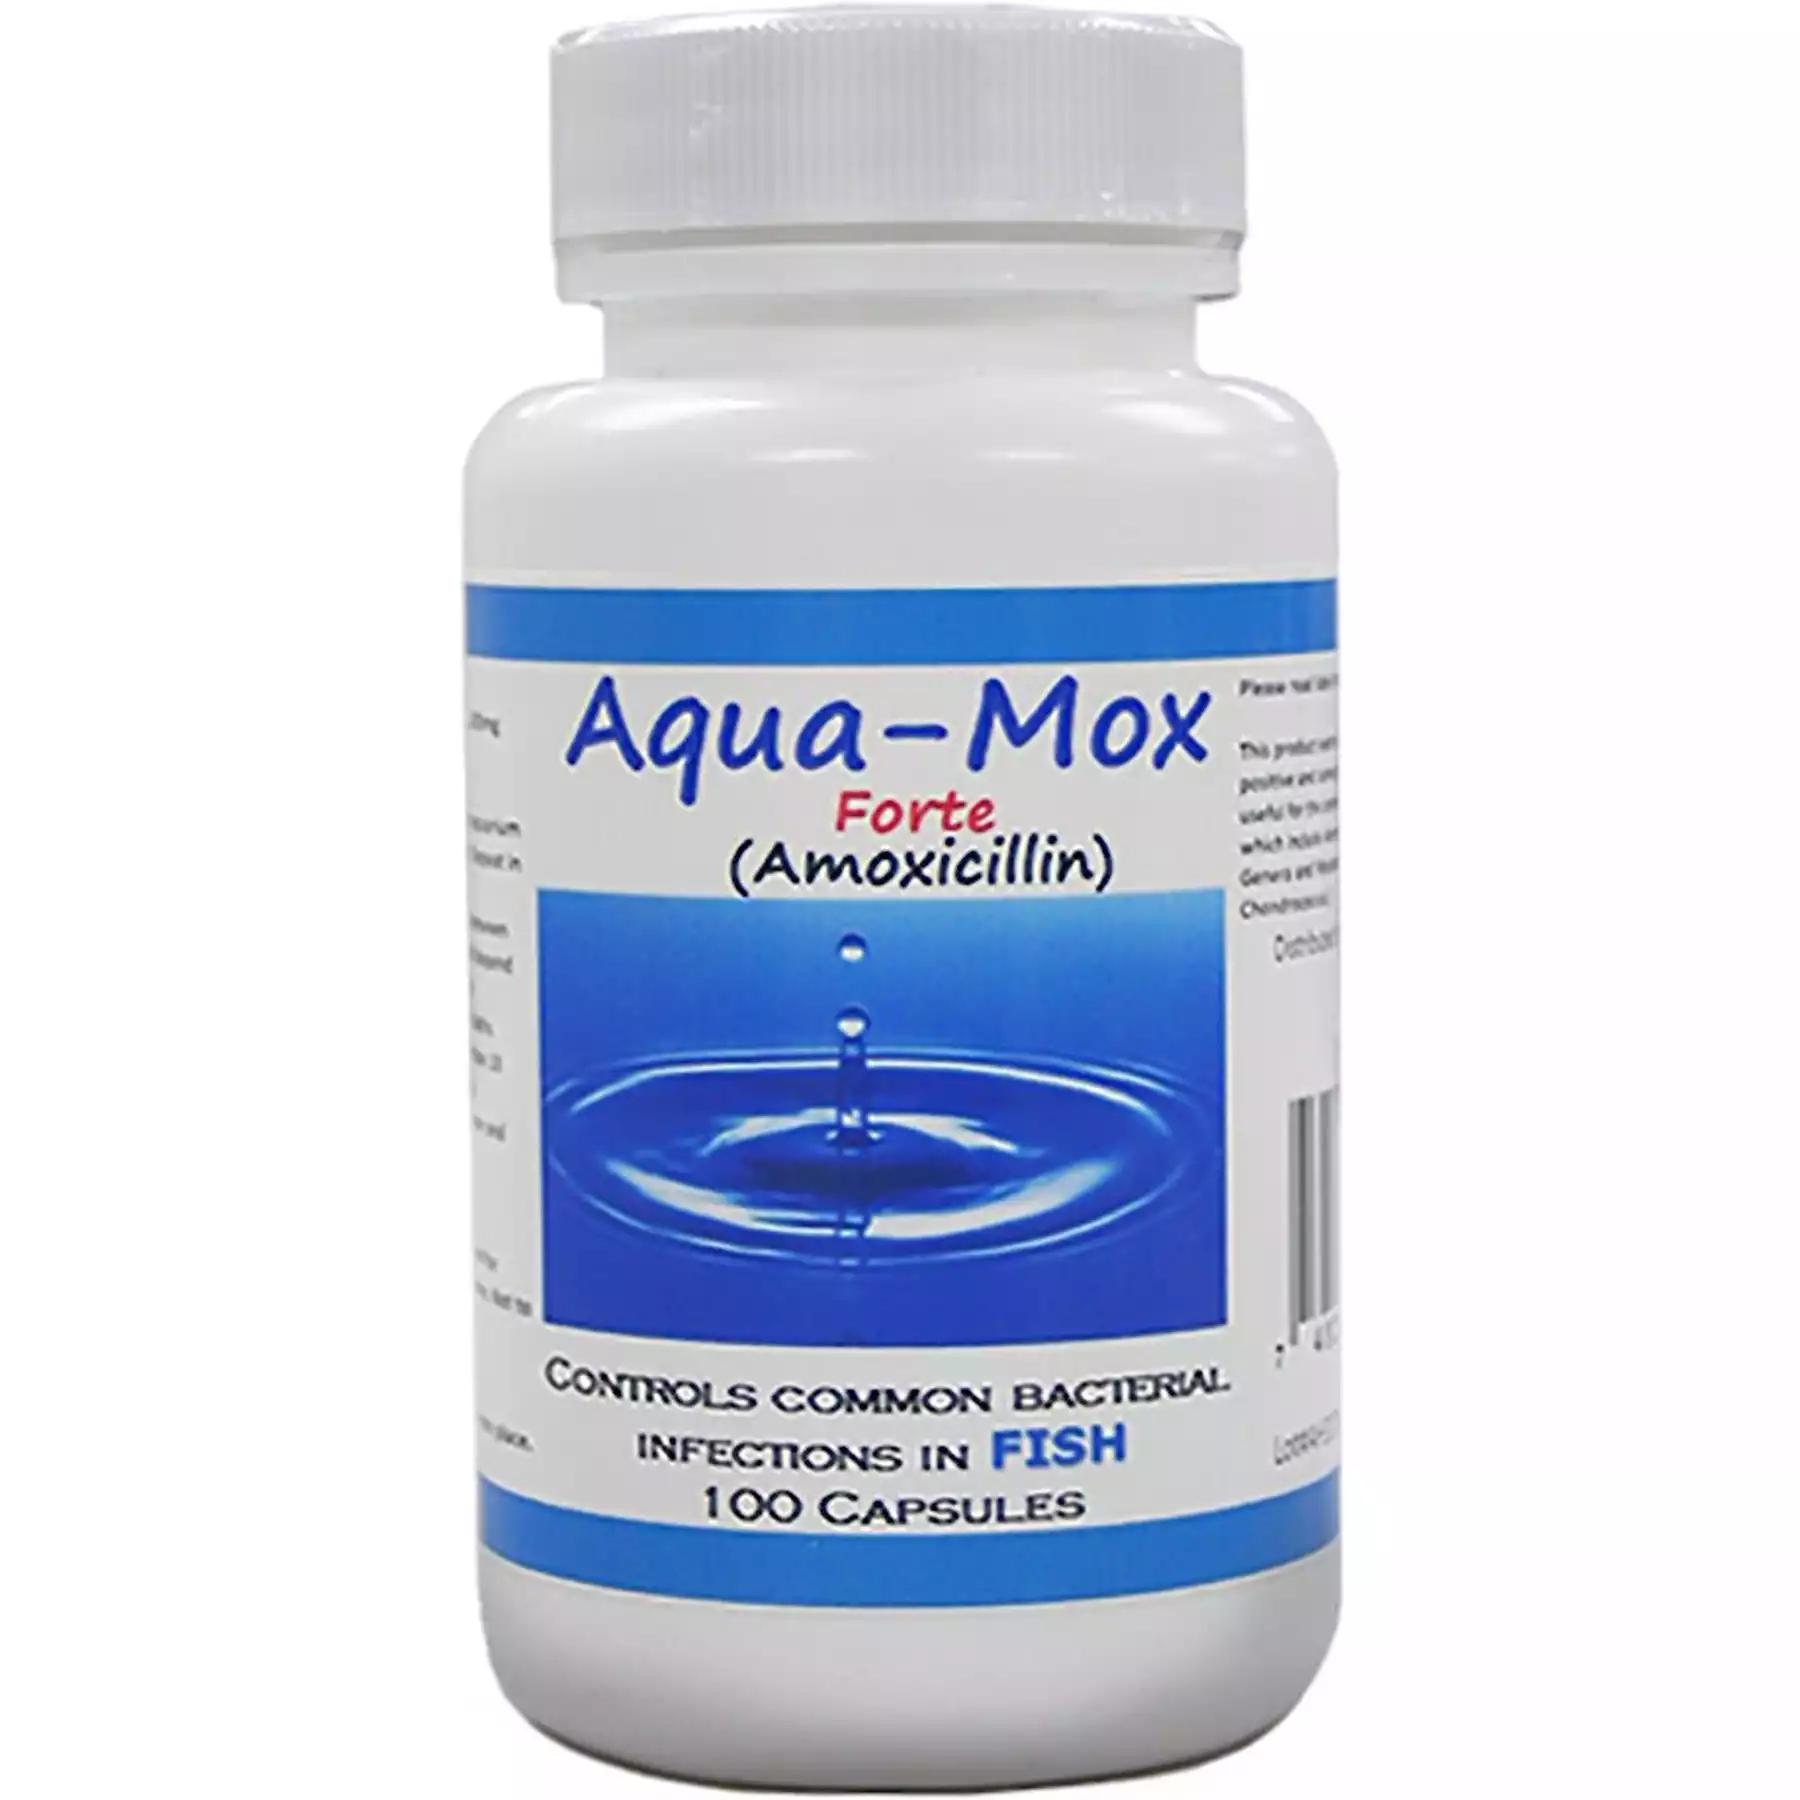 Fish Mox - Amoxillin